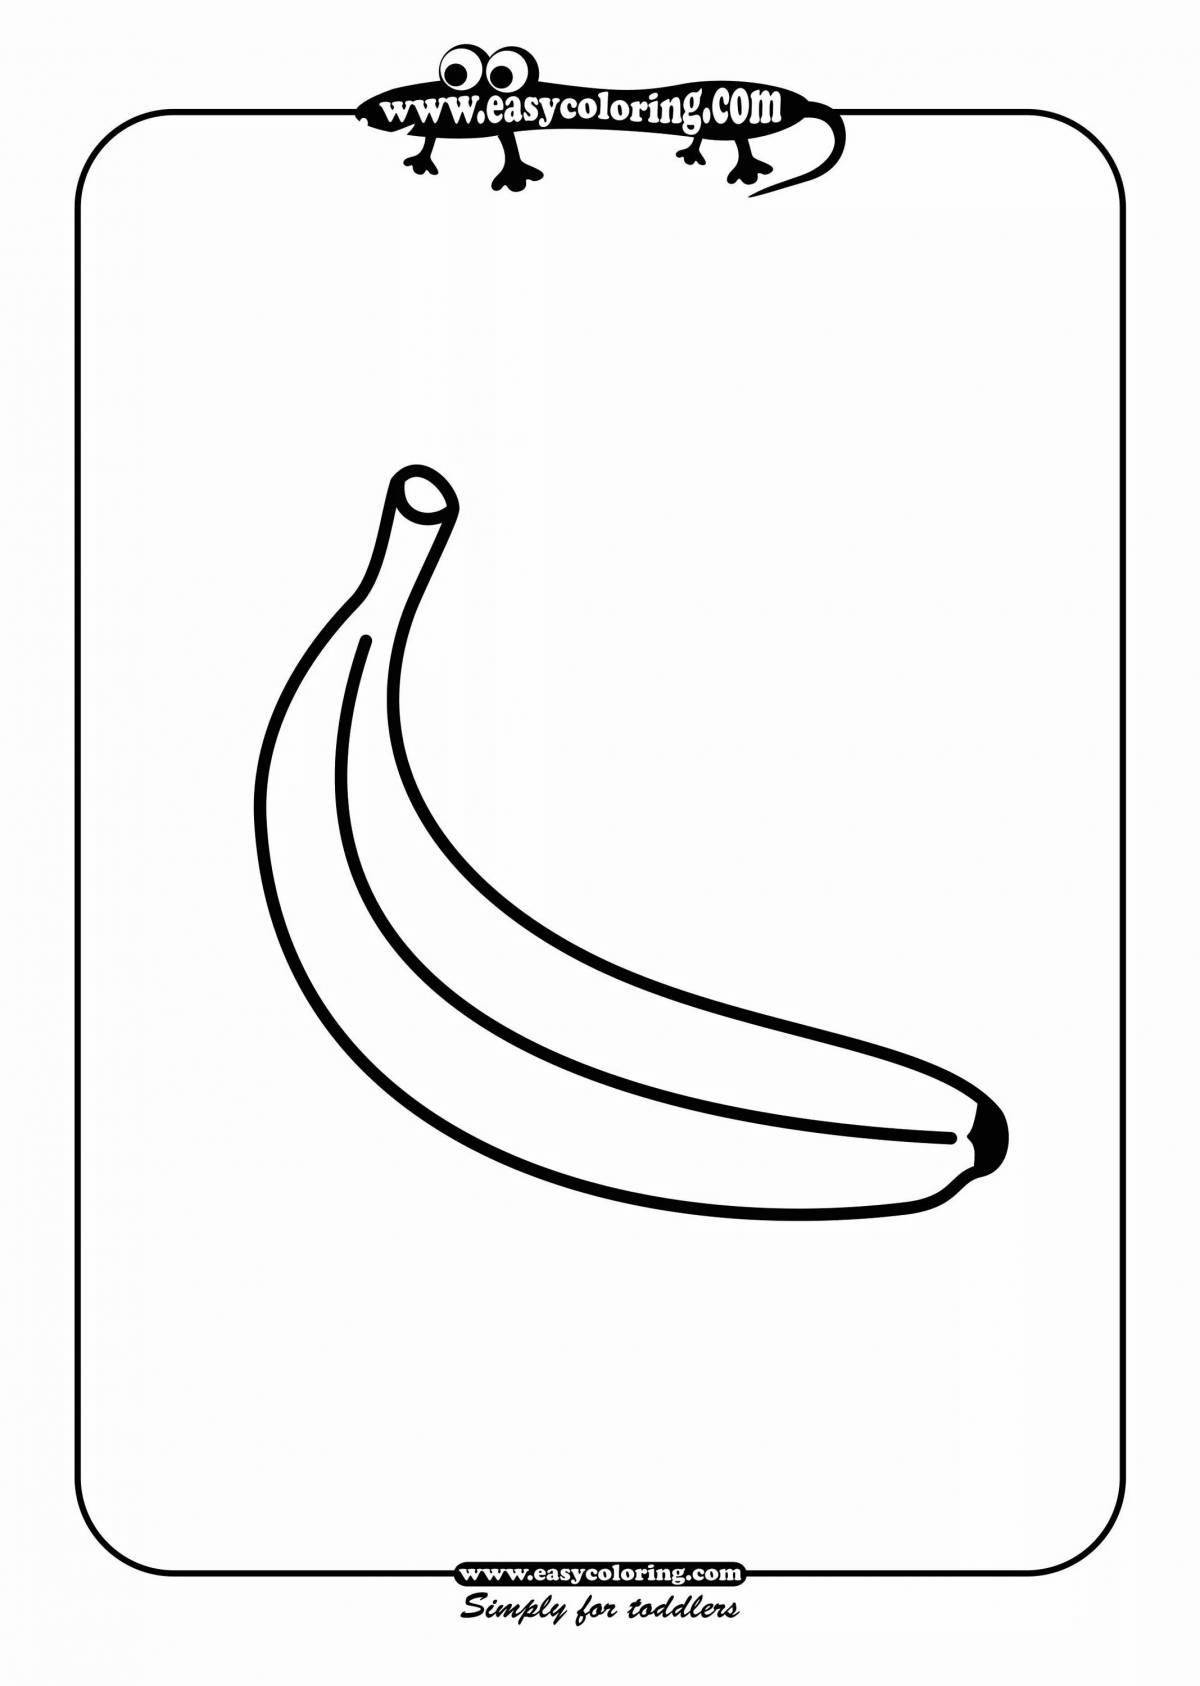 Сказочная банановая раскраска для детей 5-6 лет